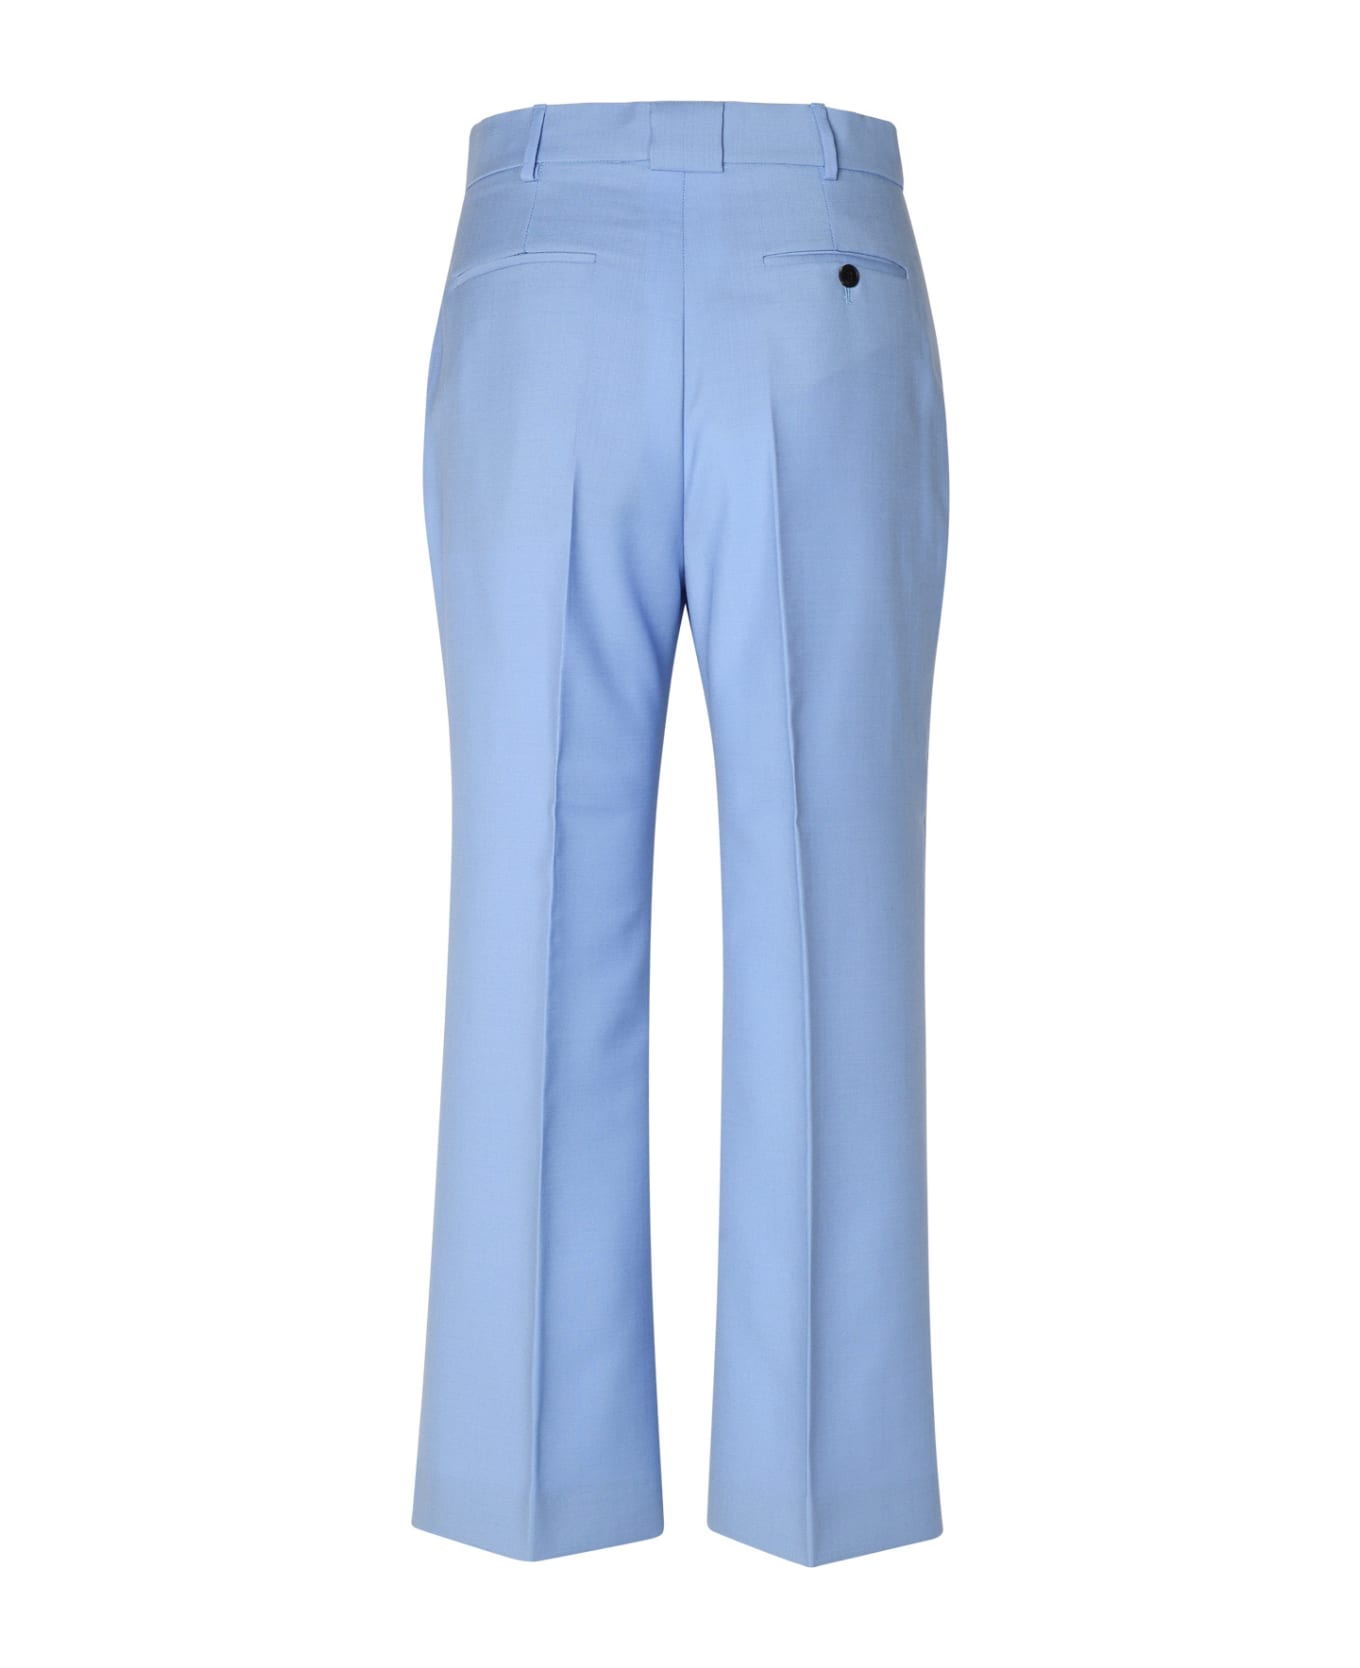 Lanvin Light Blue Virgin Wool Trousers - Light Blue ボトムス